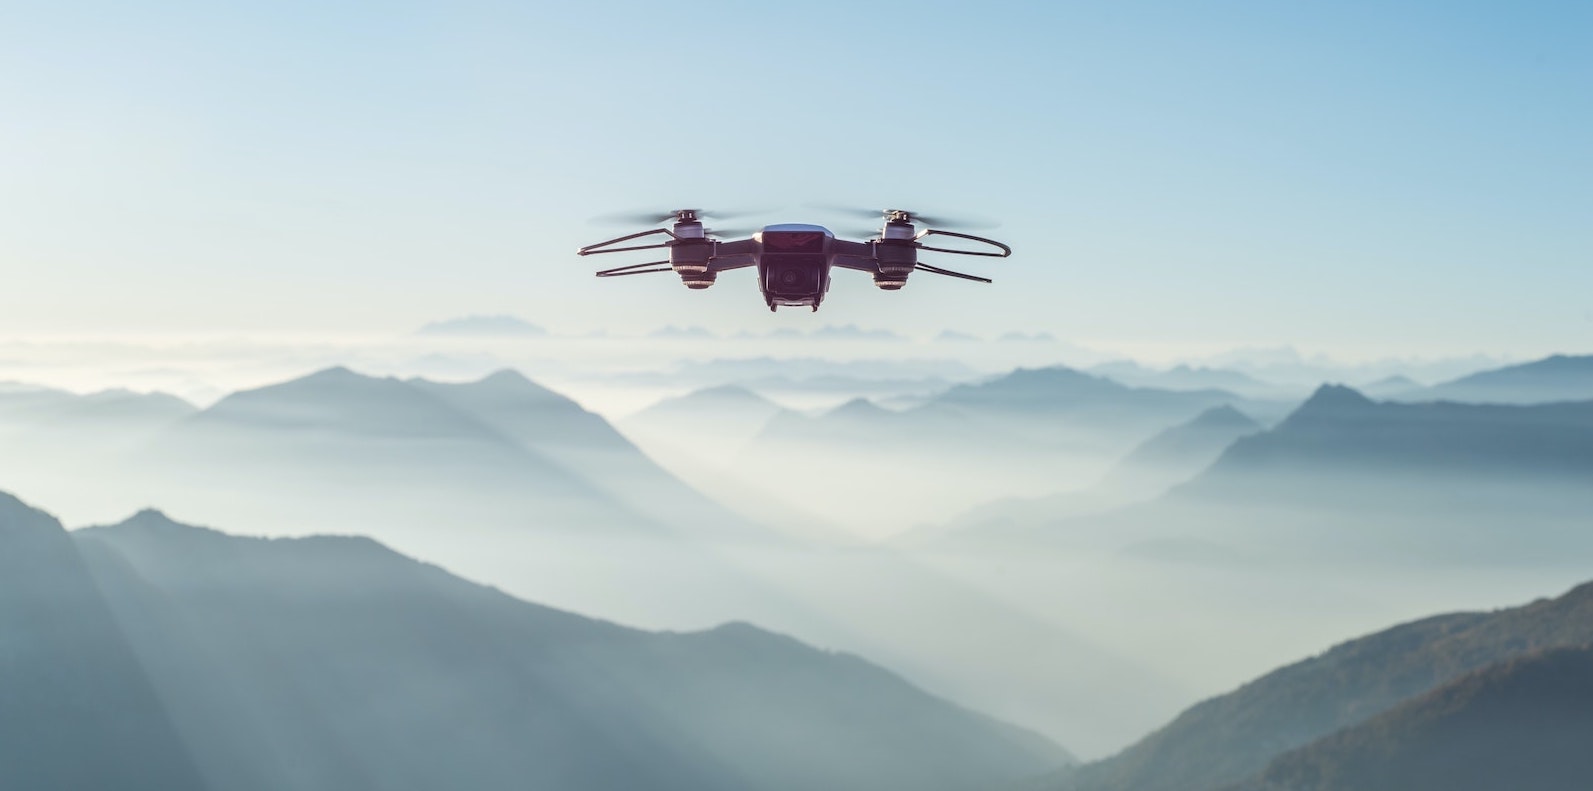 entreprise de drone à lyon et Paris - pilote de drone à lyon et paris - télépilote drone